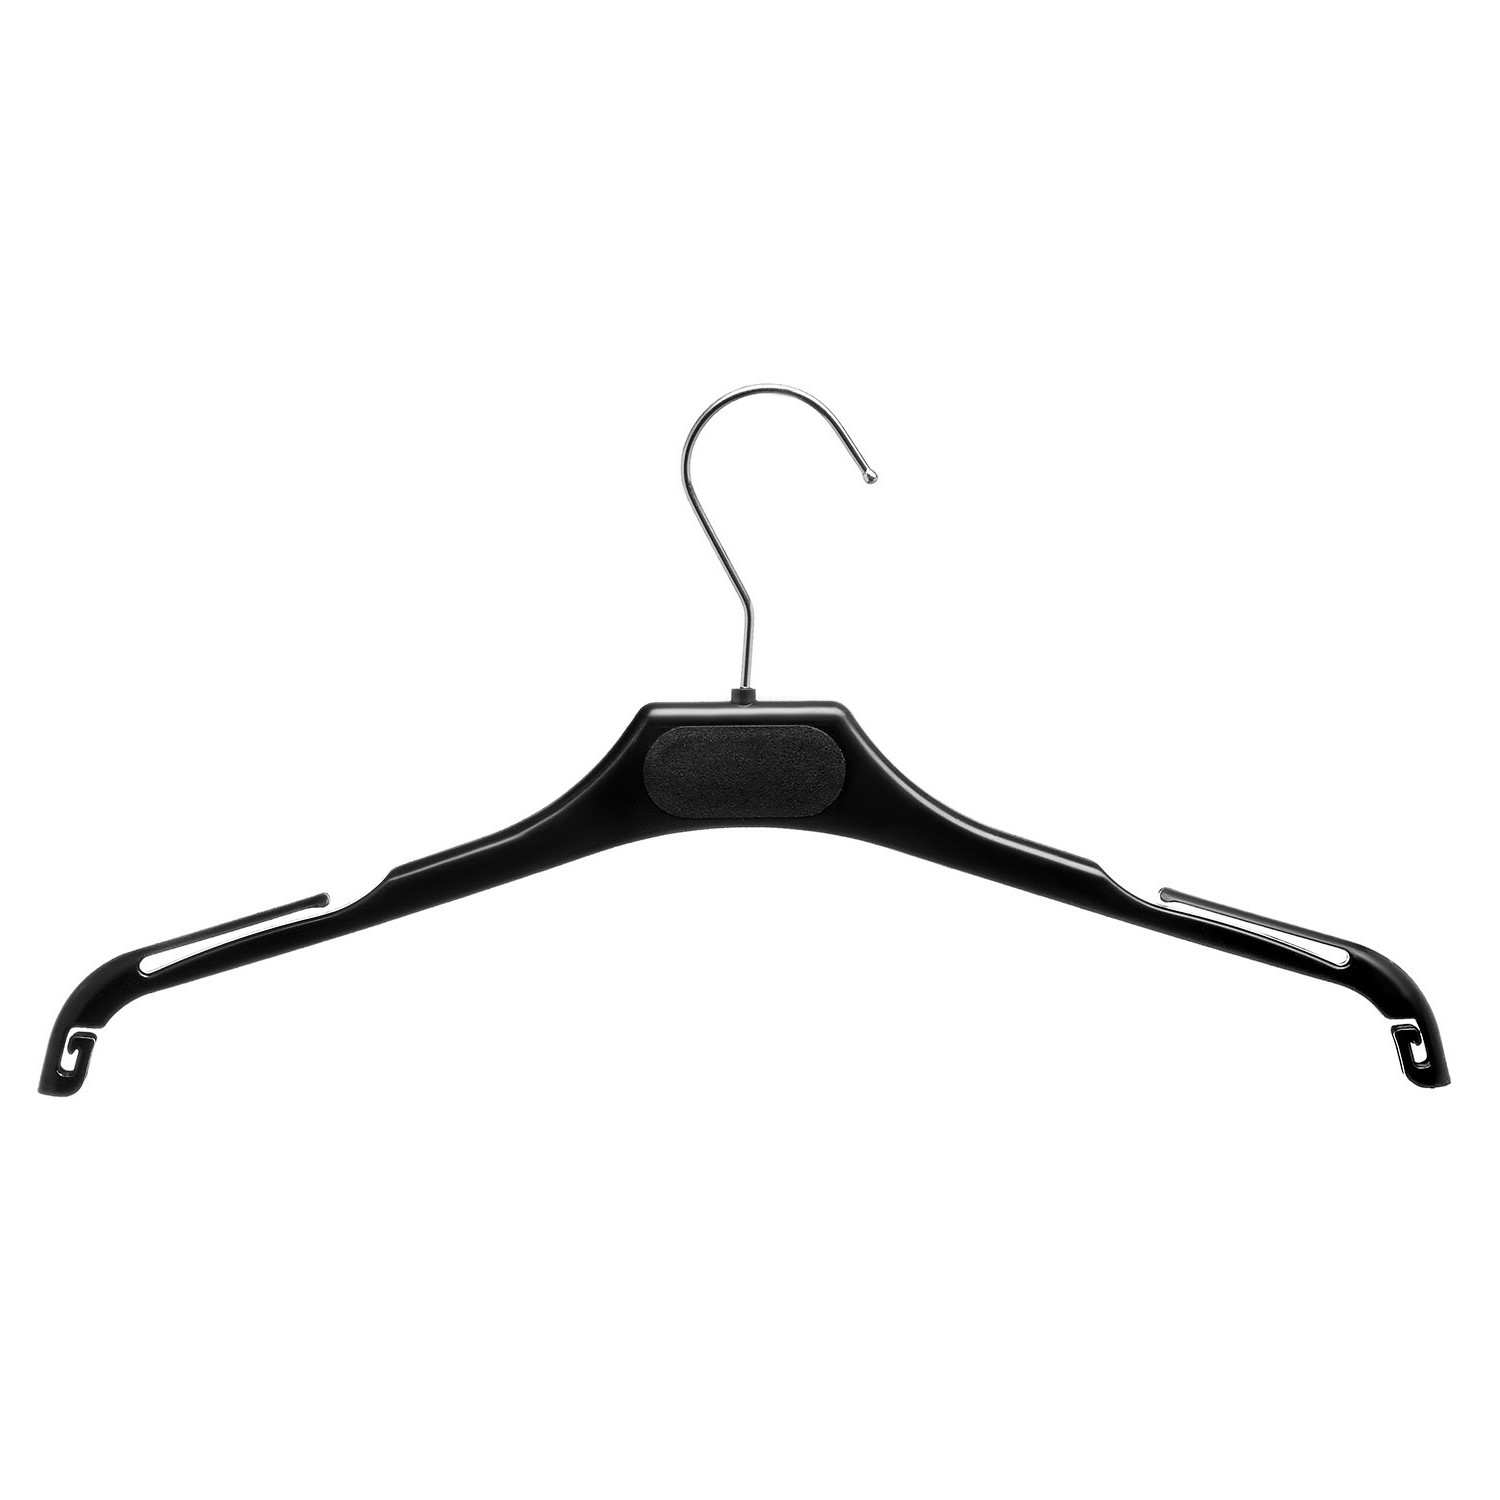 Вешалка-плечики пластмассовая Attache черная (размер 44-46)